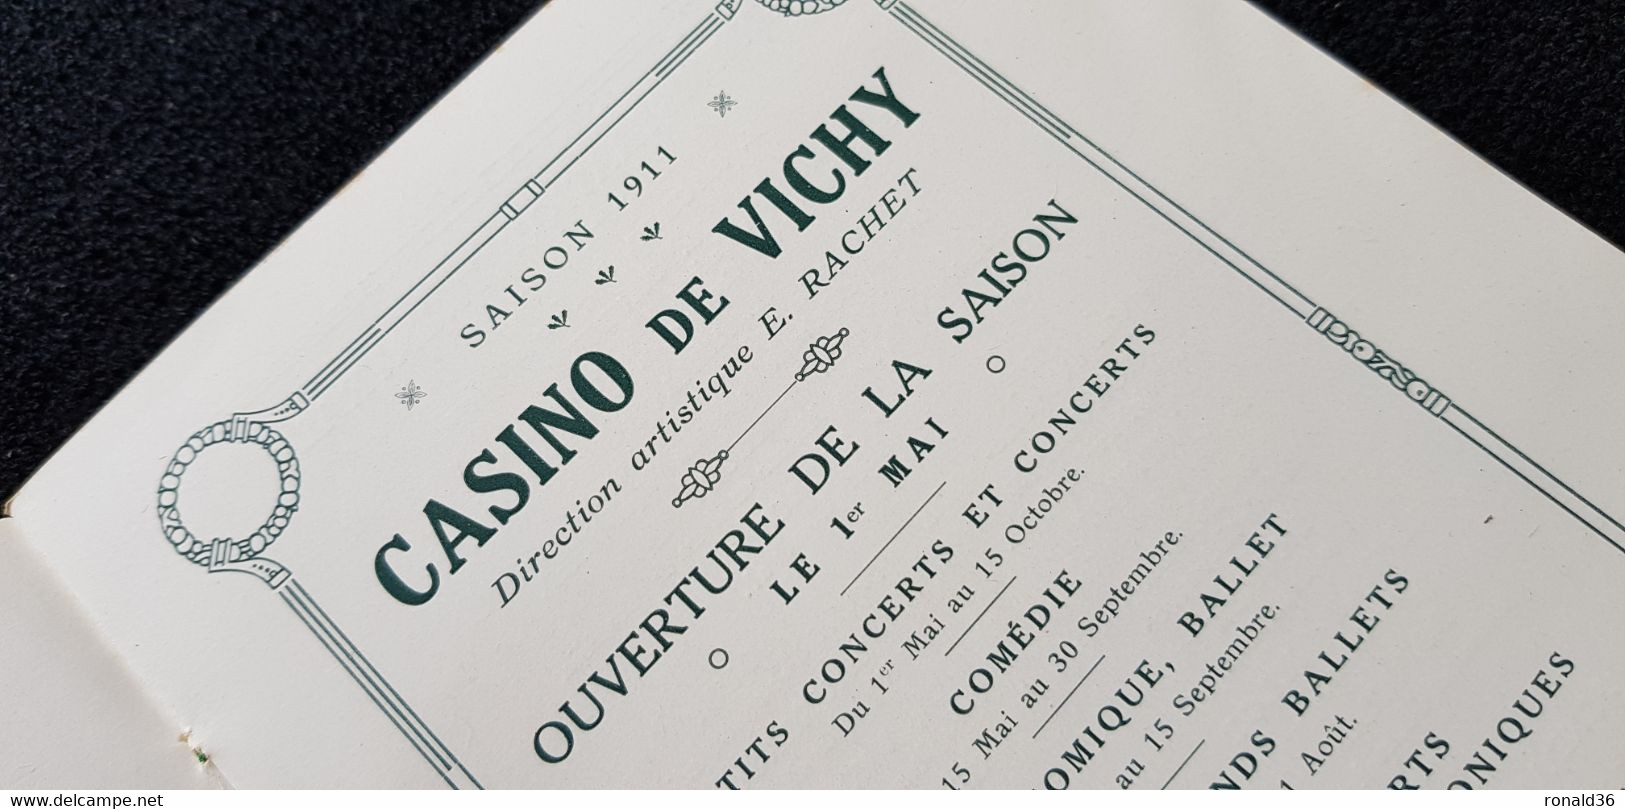 03 Allier VICHY Illustration Casino Saison 1911 Programme Artistique Concert Danse Plan Du Théatre Golf Tennis Escrime - Programs